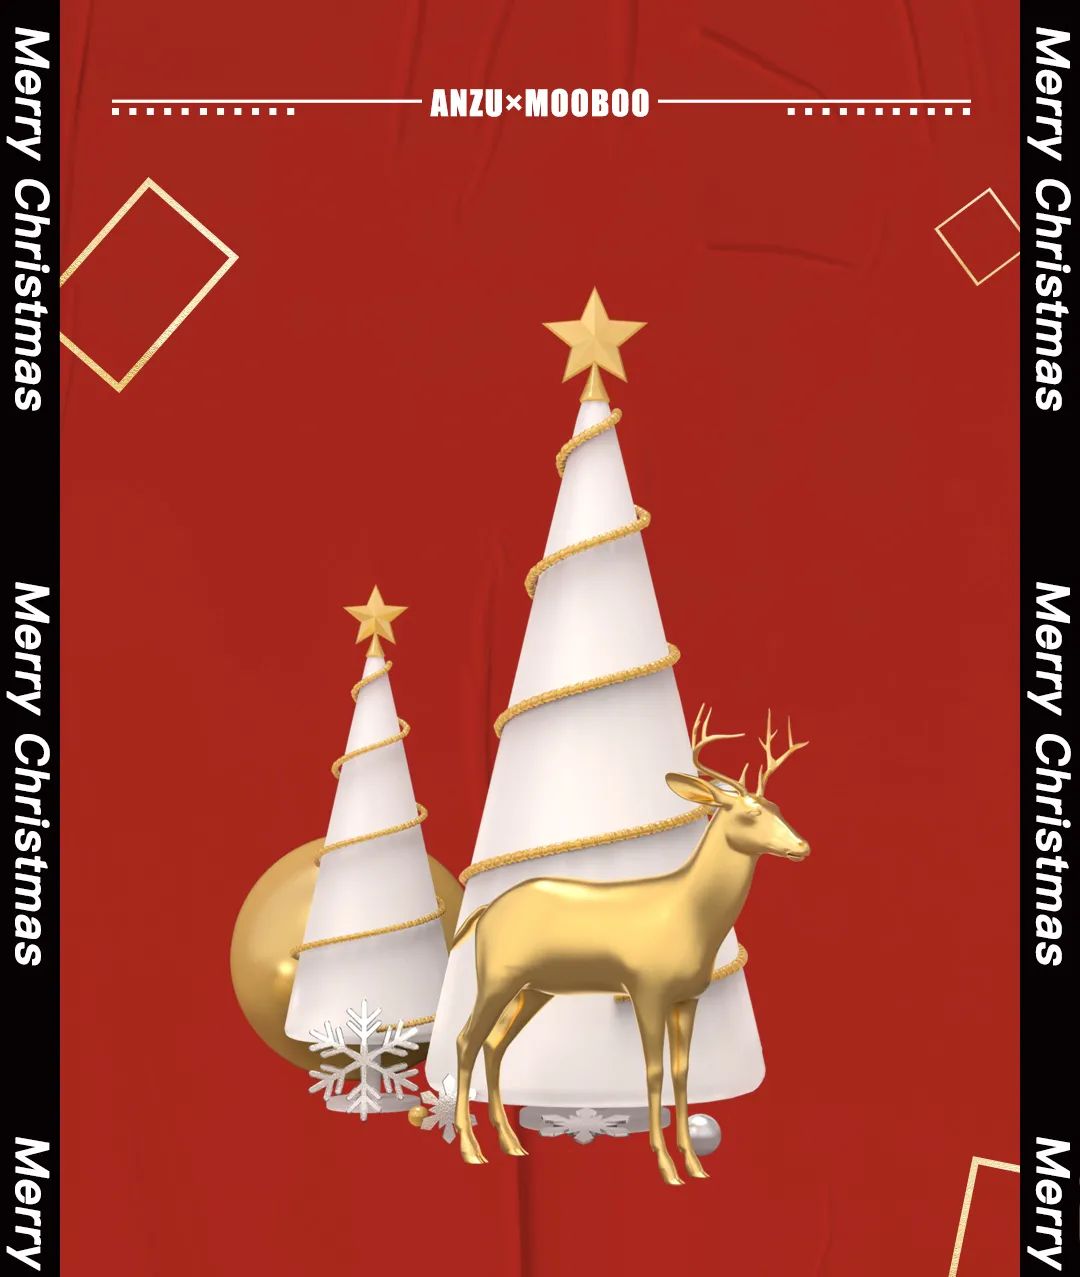 𝗠𝗢𝗢𝗕𝗢𝗢&𝗔𝗡𝗭𝗨 | 𝟭𝟮.𝟮𝟰-𝟮𝟱 圣诞轰趴即将开启 给你忘不了的一次狂欢圣诞！-潍坊慕本酒吧/MOOBOO RAVE SPACE